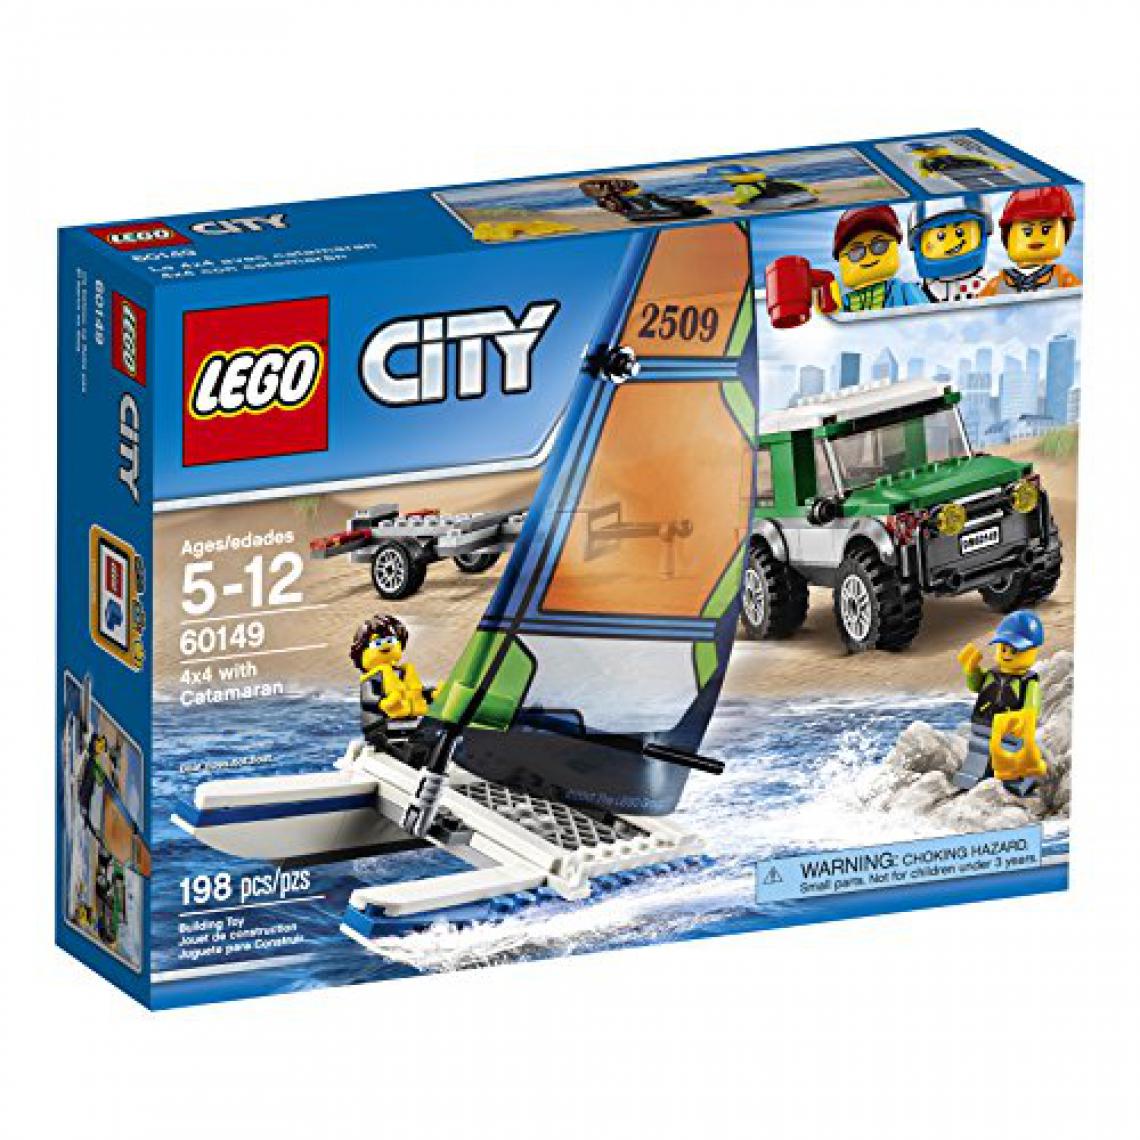 Lego - LEgO city great Vehicles 4x4 avec catamaran 60149 jouet pour enfants - Briques et blocs